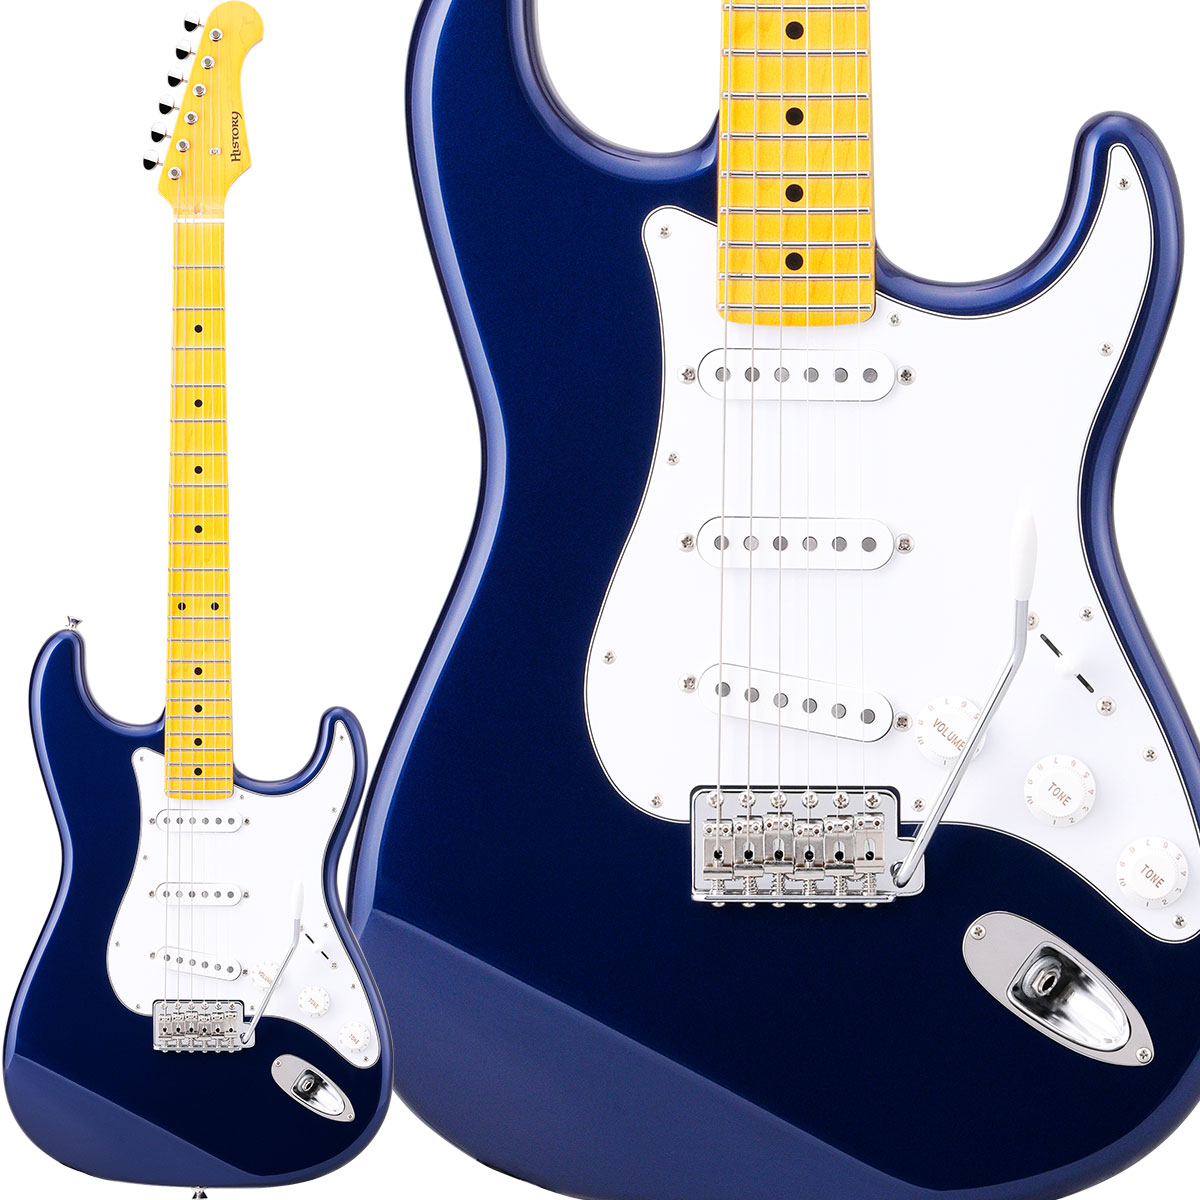 【純国産ギター】 HISTORY HST/m-Standard MBL Metallic Blue ハムバッカー切替可能 アルダーボディ エレキギター ストラトキャスター 【ヒストリー 3年保証 日本製 Standard series】